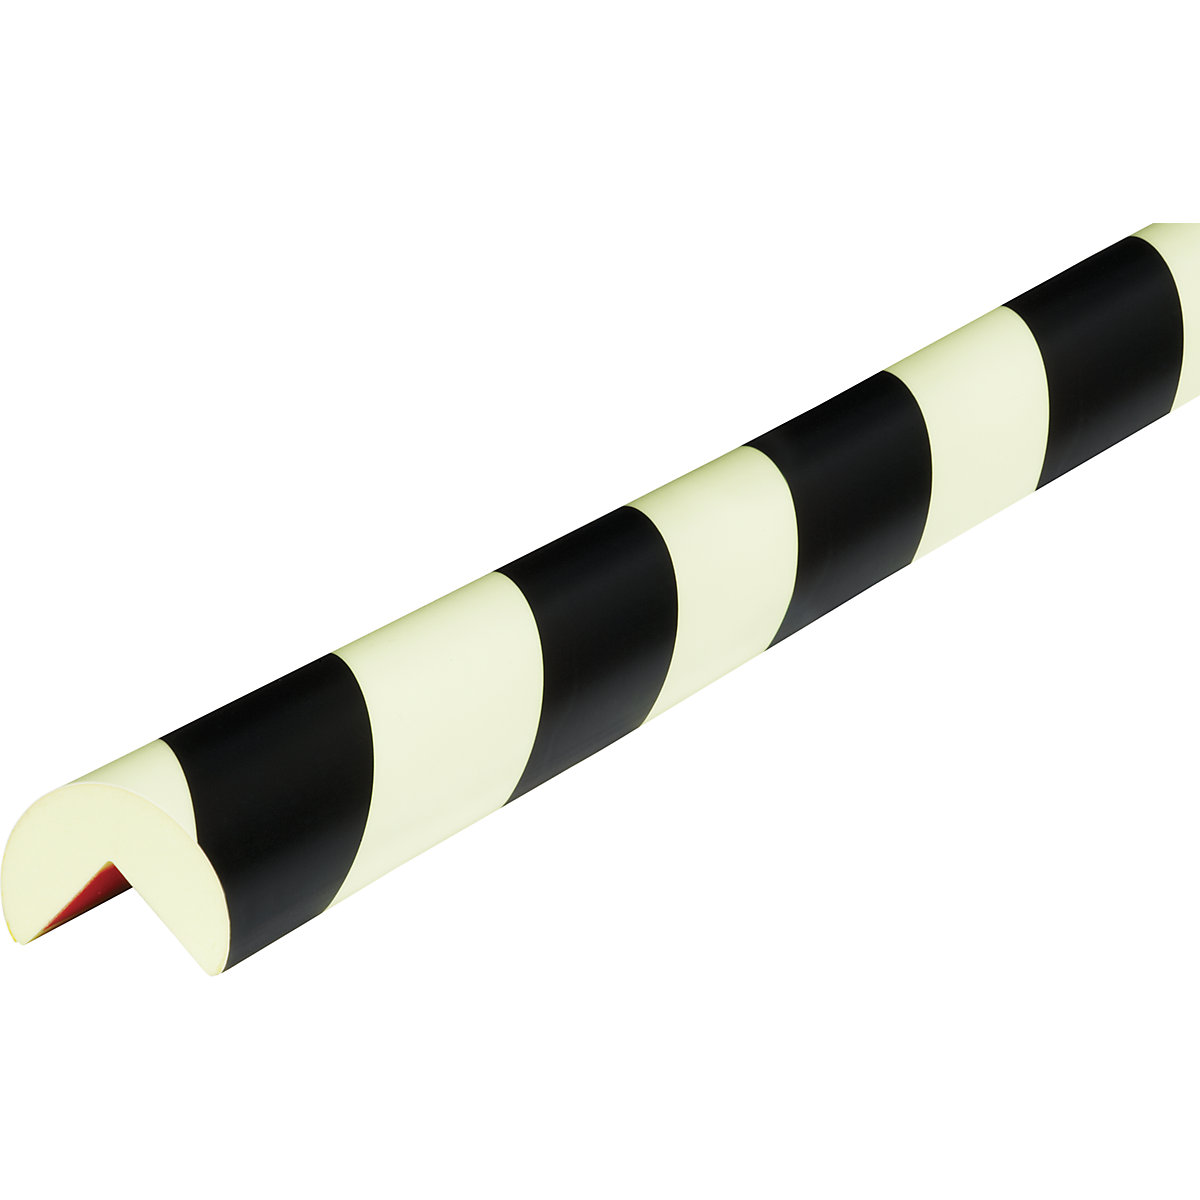 Zaštita kutova Knuffi® – SHG, tip A, komad od 1 m, u crnoj boji / fotoluminiscentnoj izvedbi-18